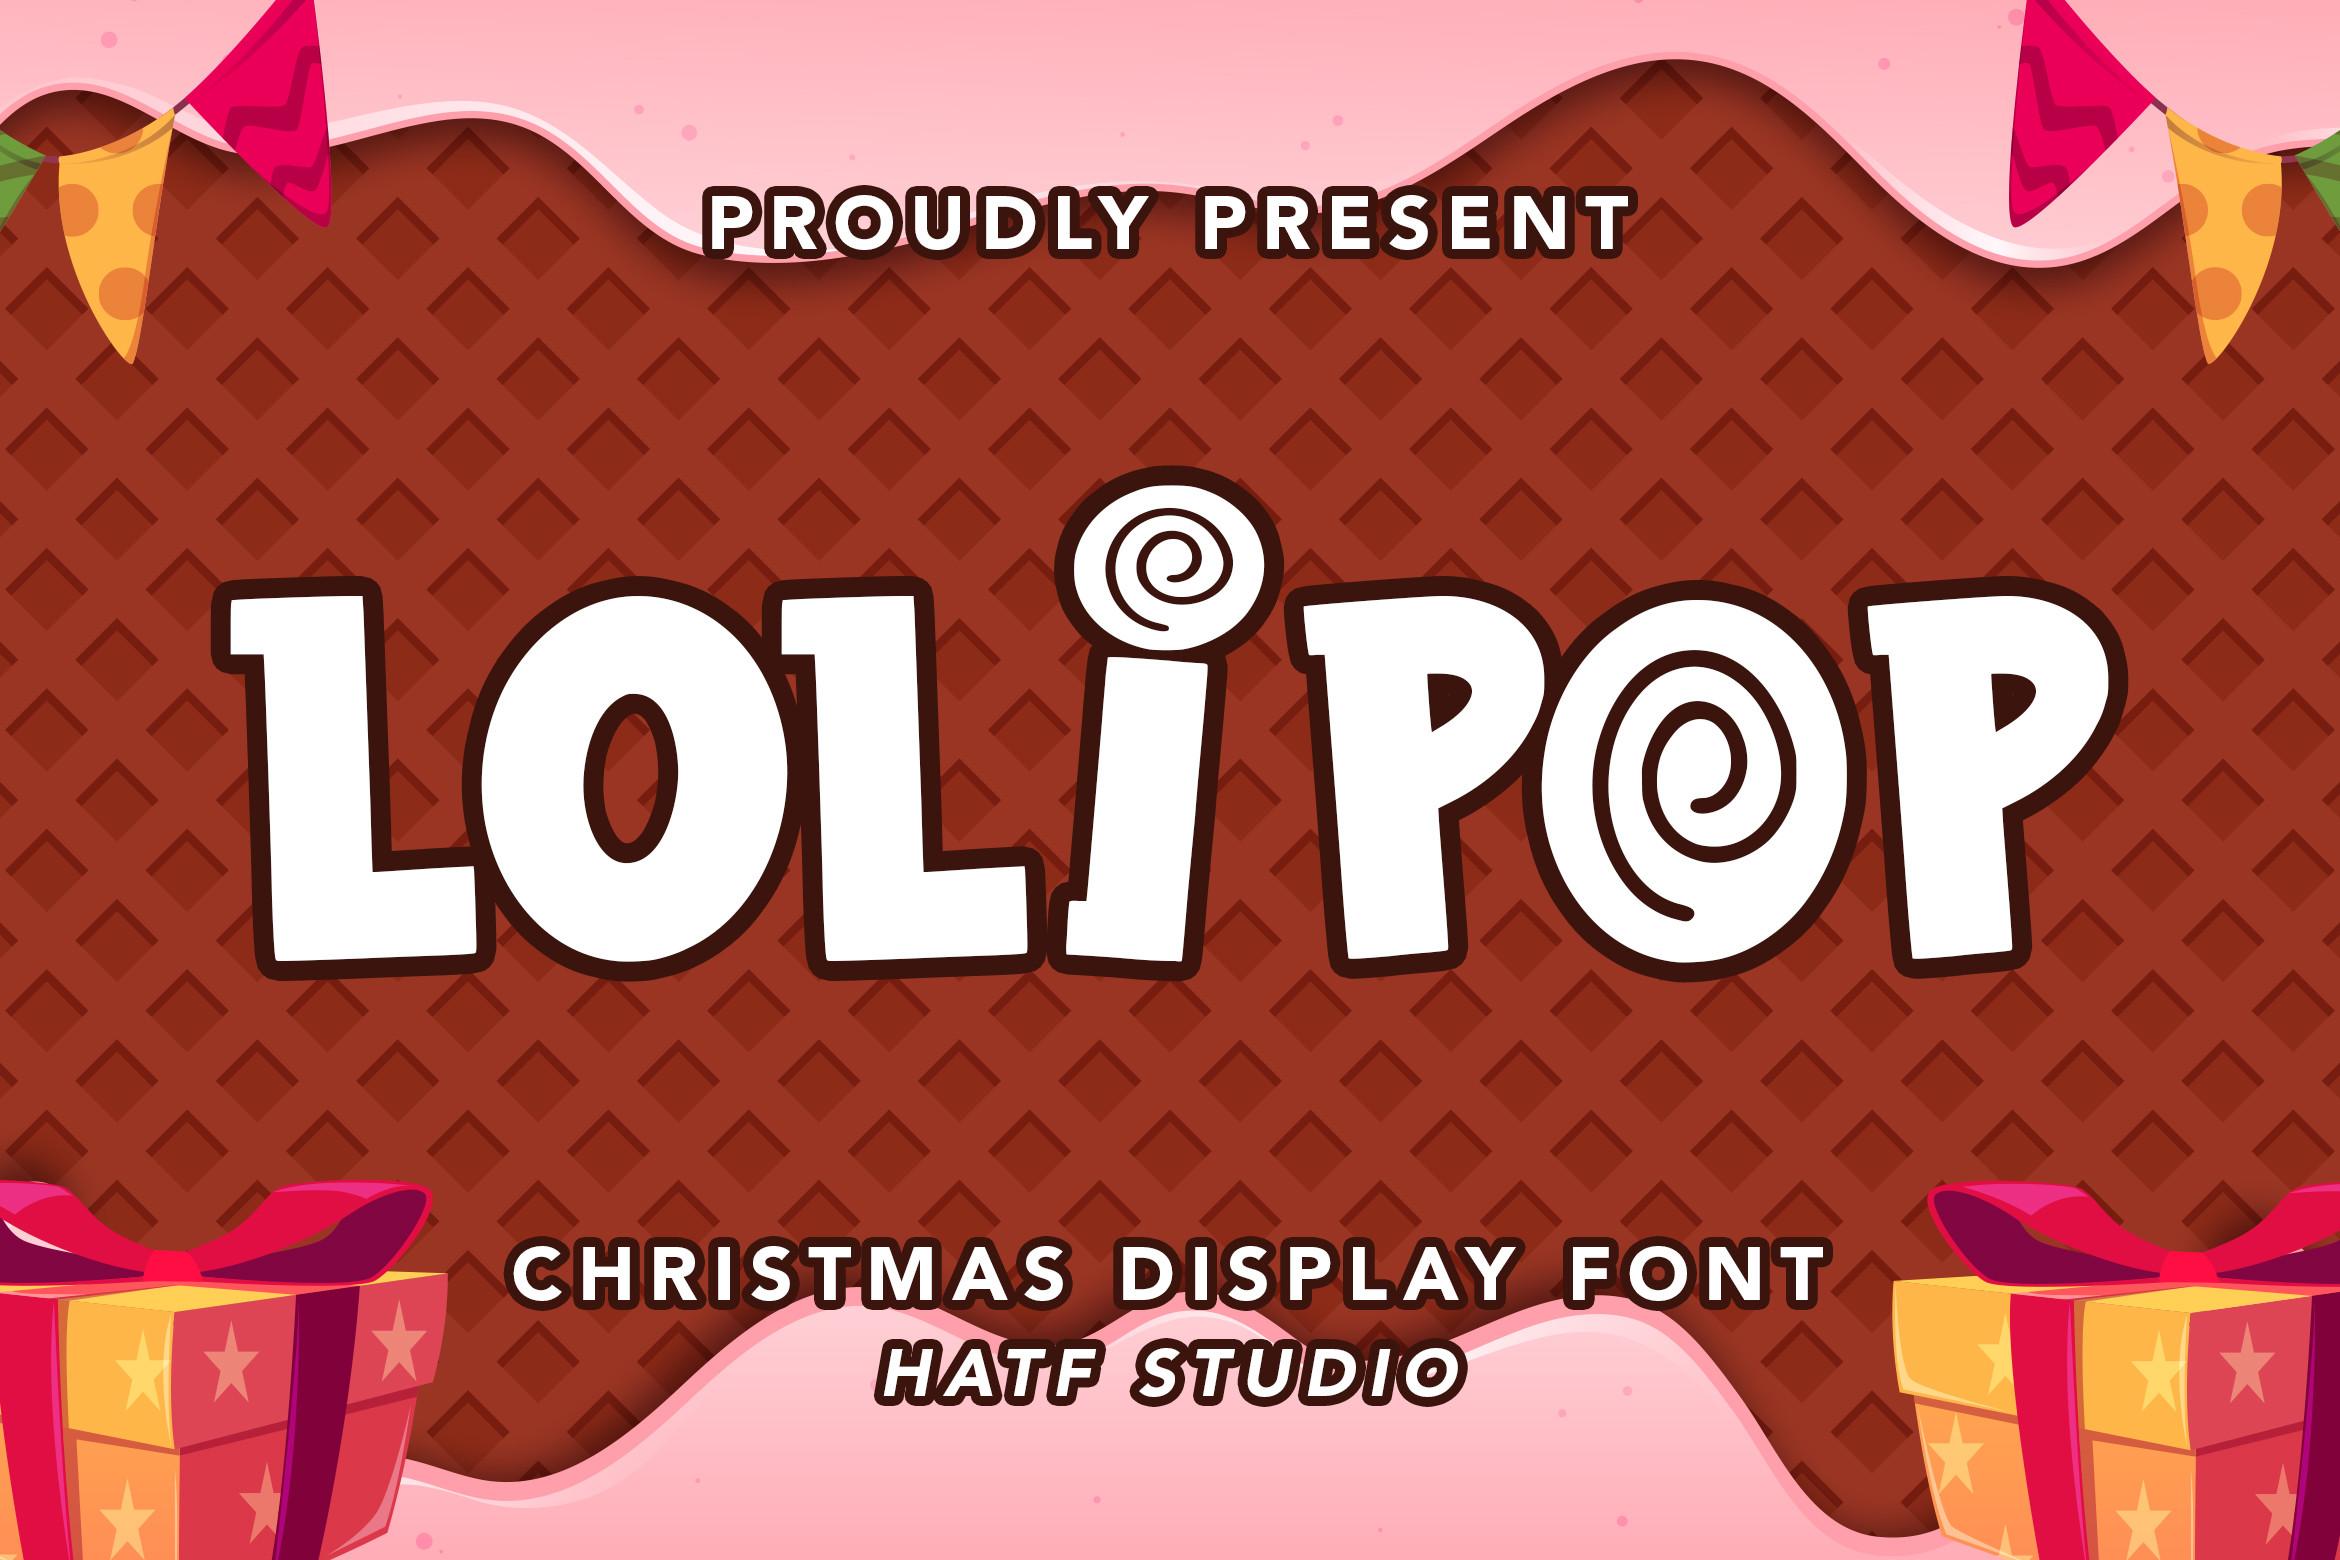 Loli Pop Font